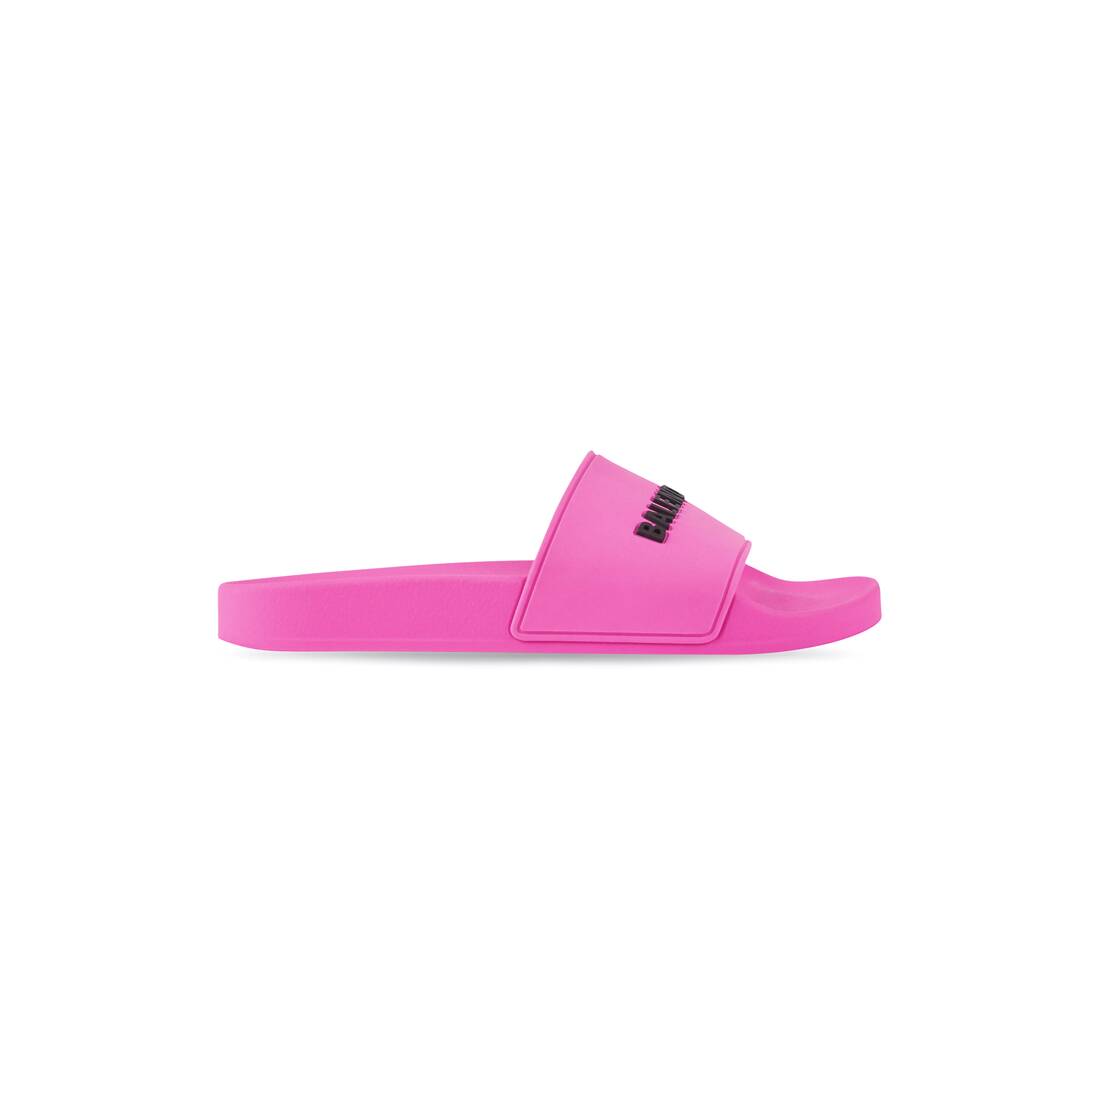 Women's Pool Slide Sandal in Fluo Pink